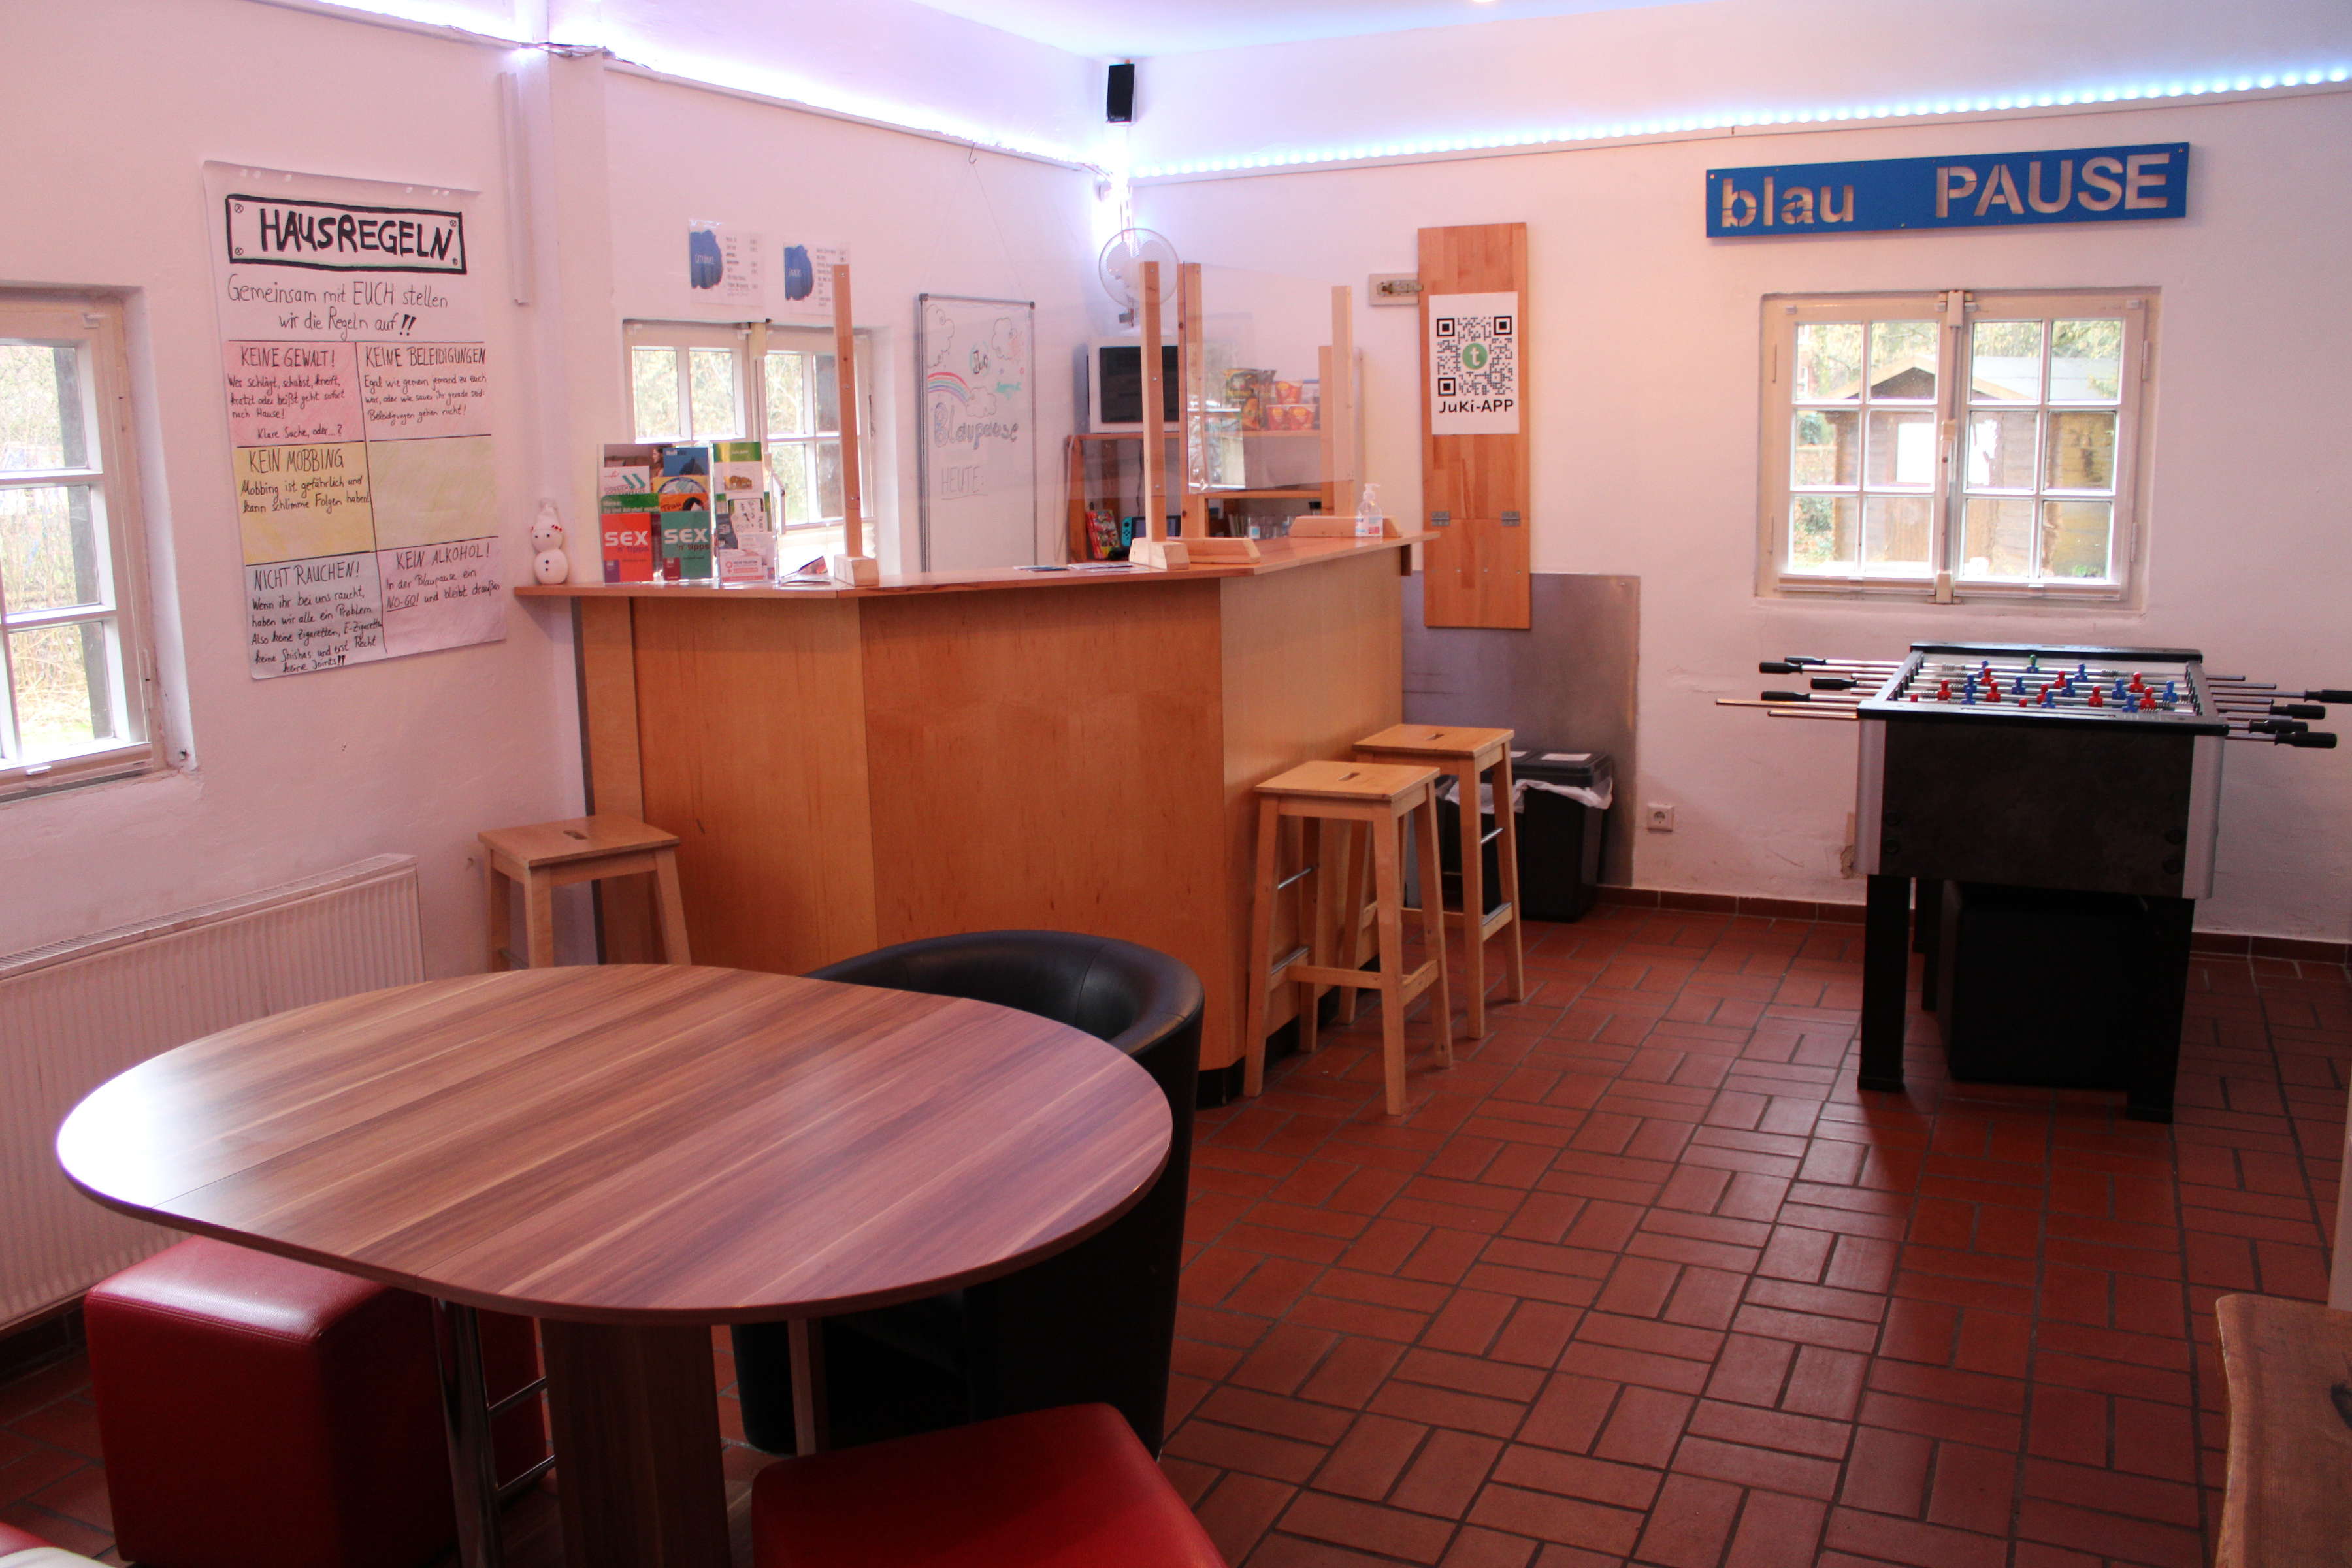 Hier siehst du einen Teil des Cafébereichs vom Jugendcafé Blaupause